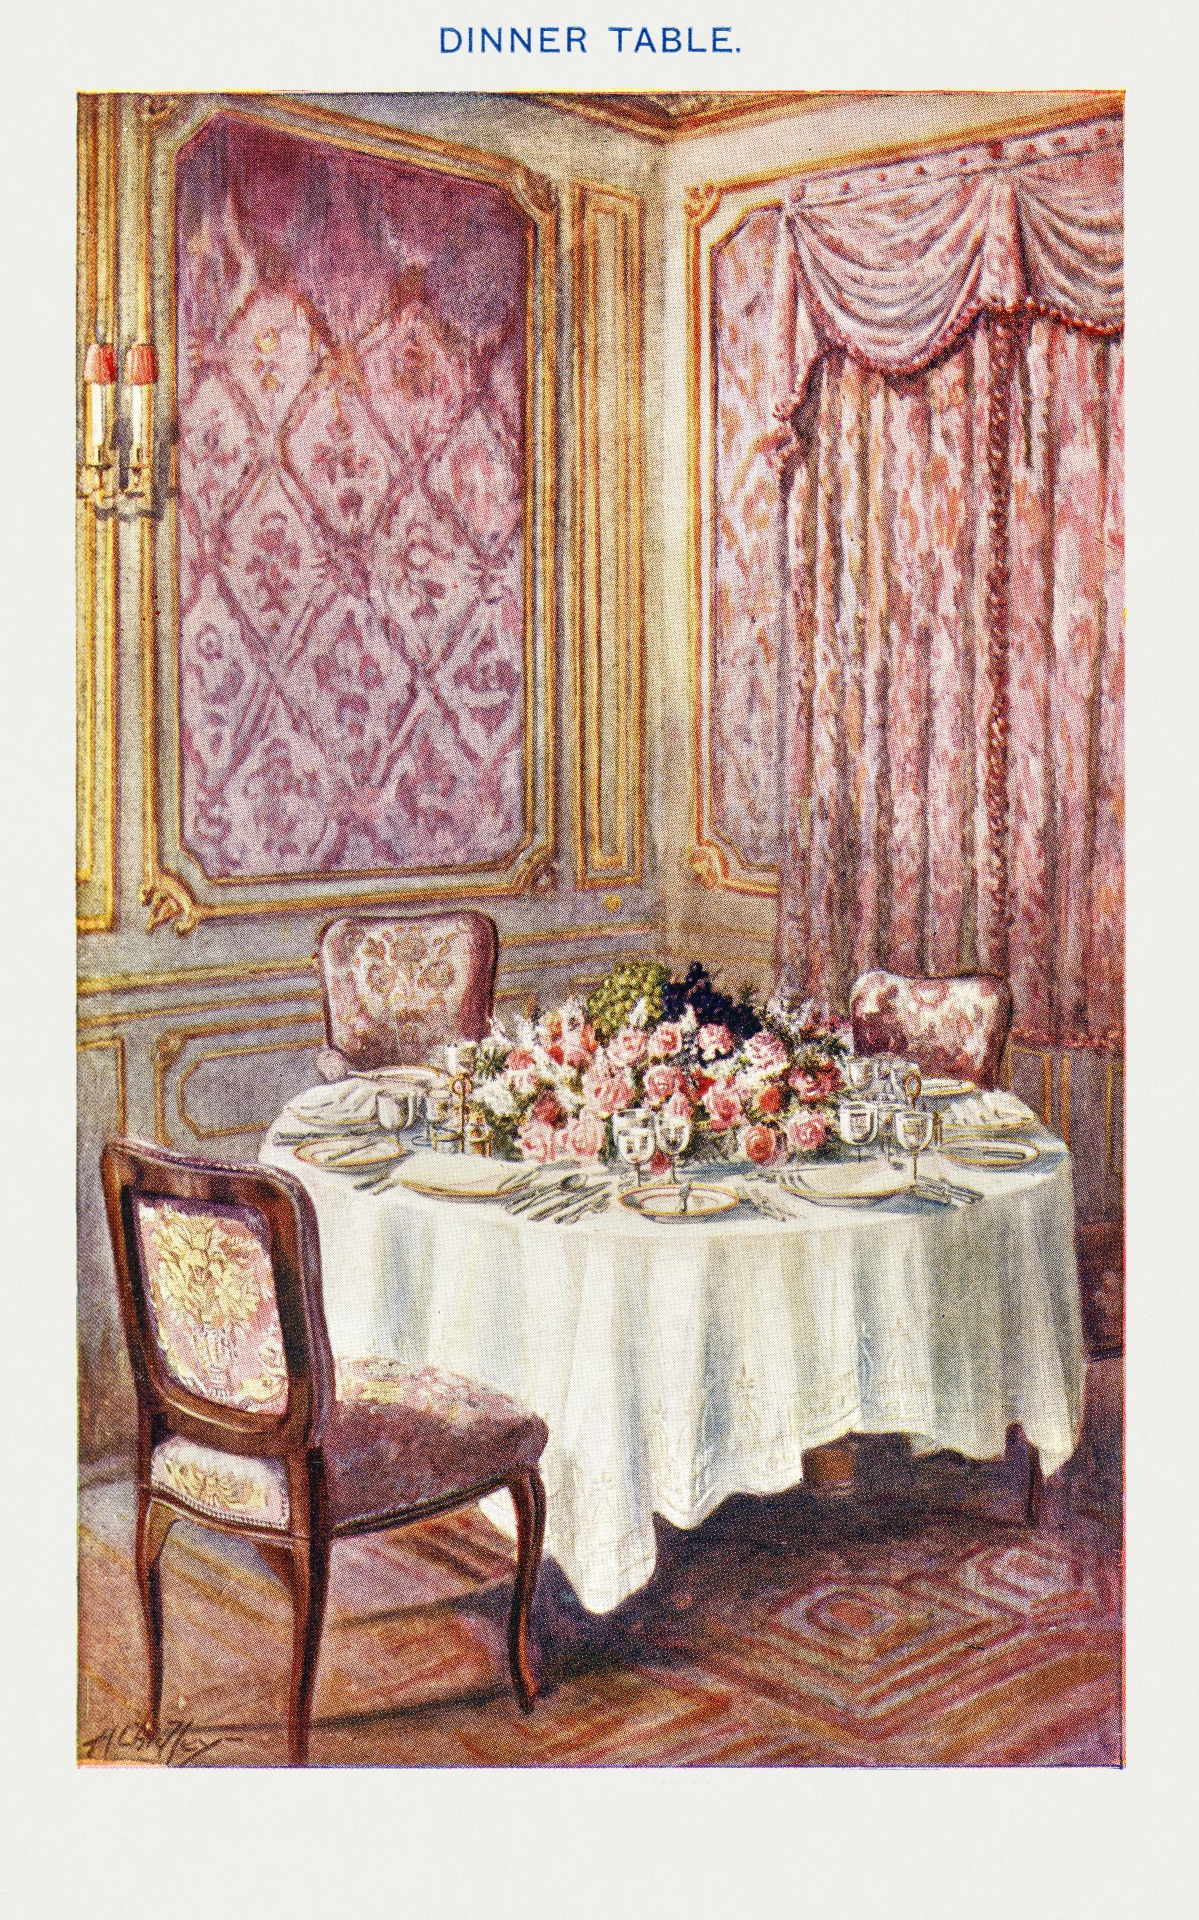 Dining room vintage art space public domain epoch age renaissance art nouveau